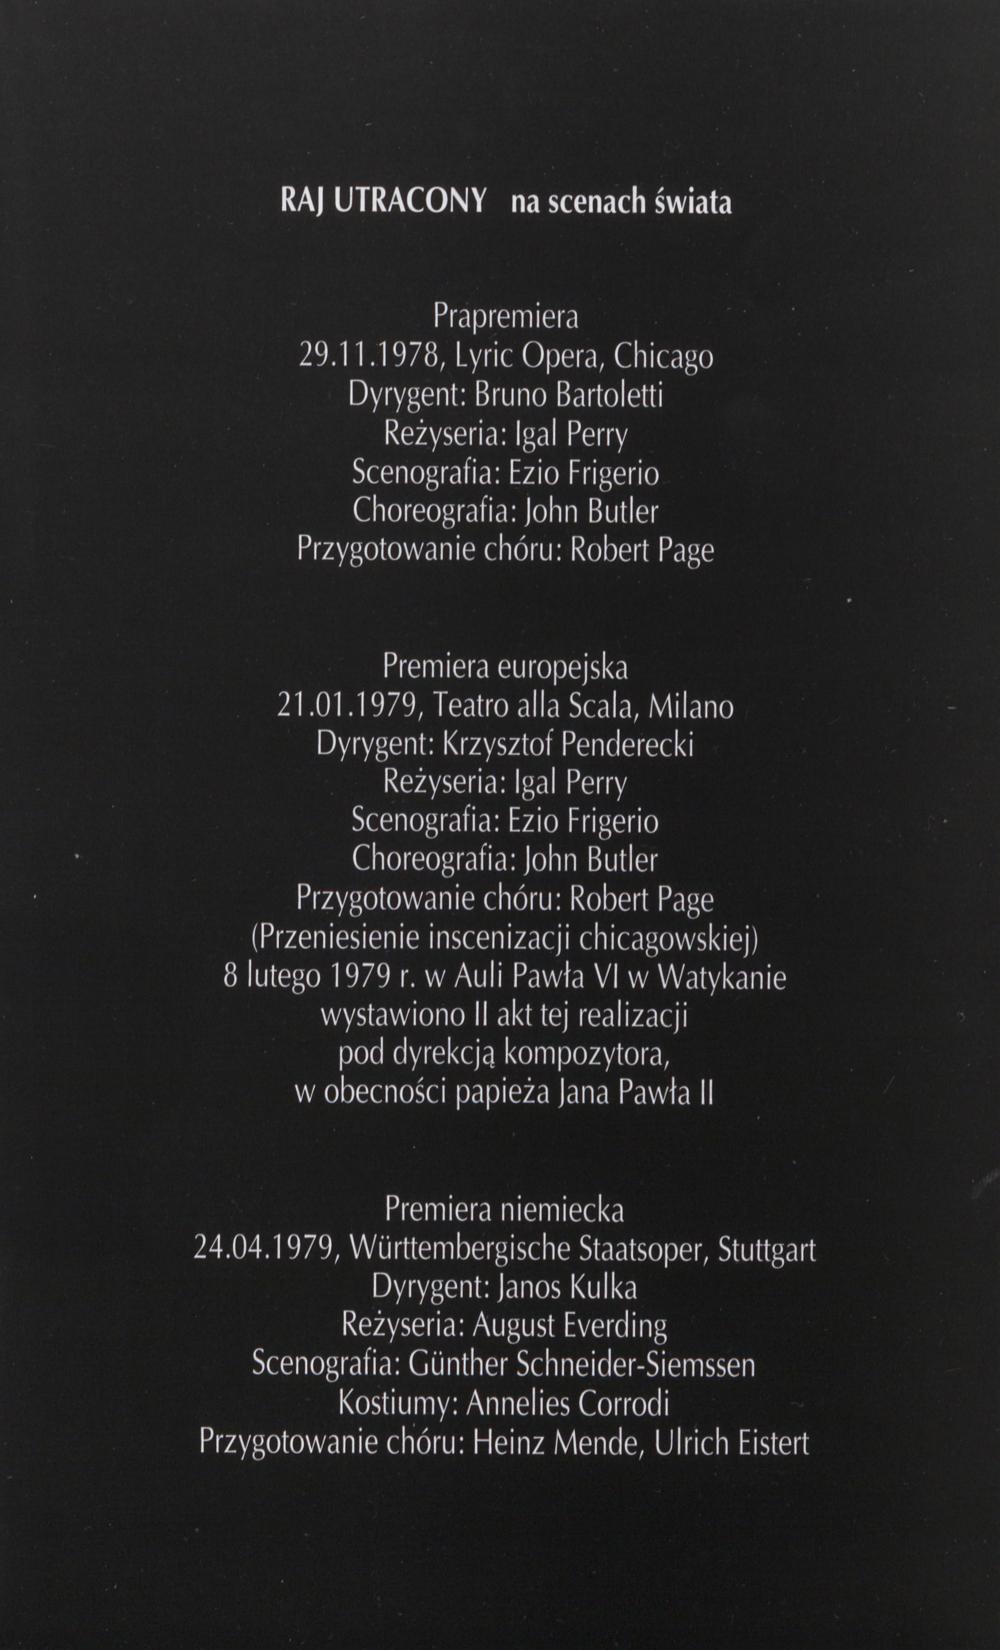 Program ze wznowienia „Raj utracony” Krzysztof Penderecki 17-09-1998